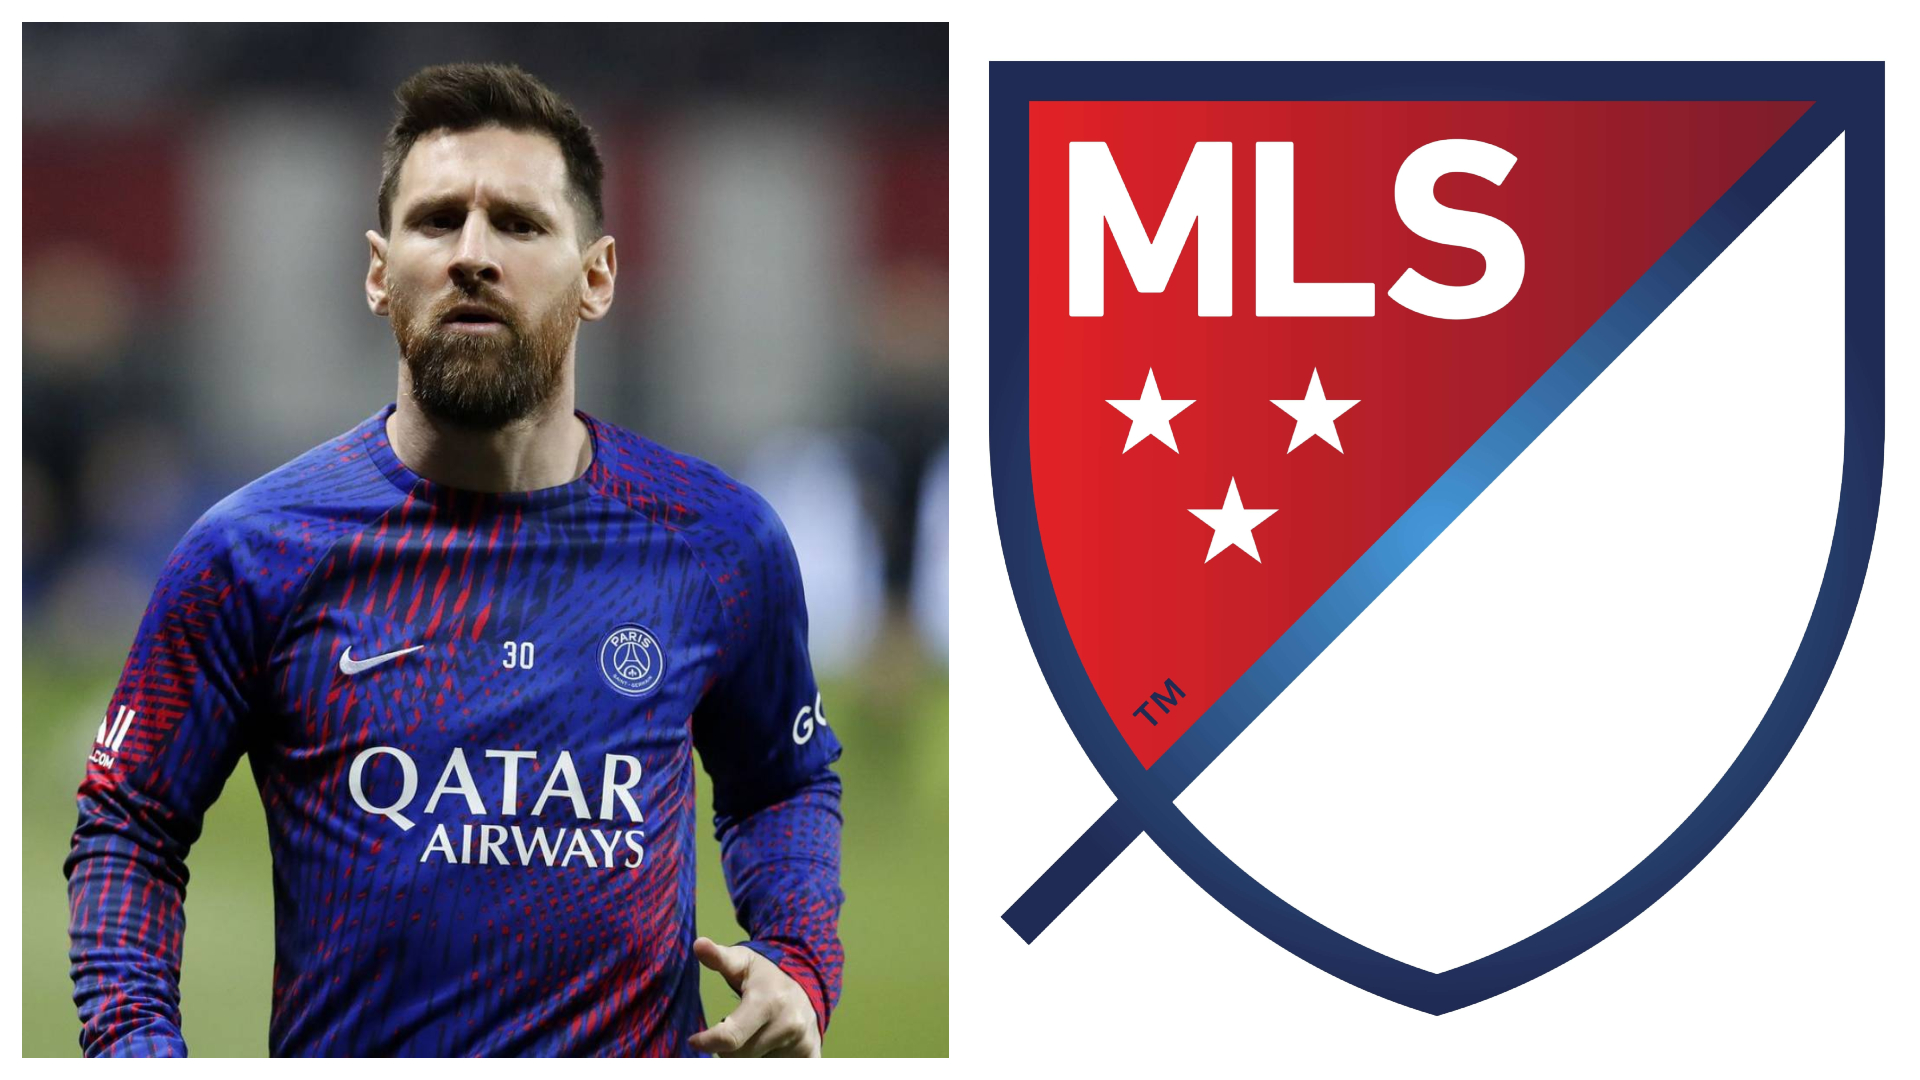 Leo Messi y escudo de la MLS/ Créditos Fichajes.com 